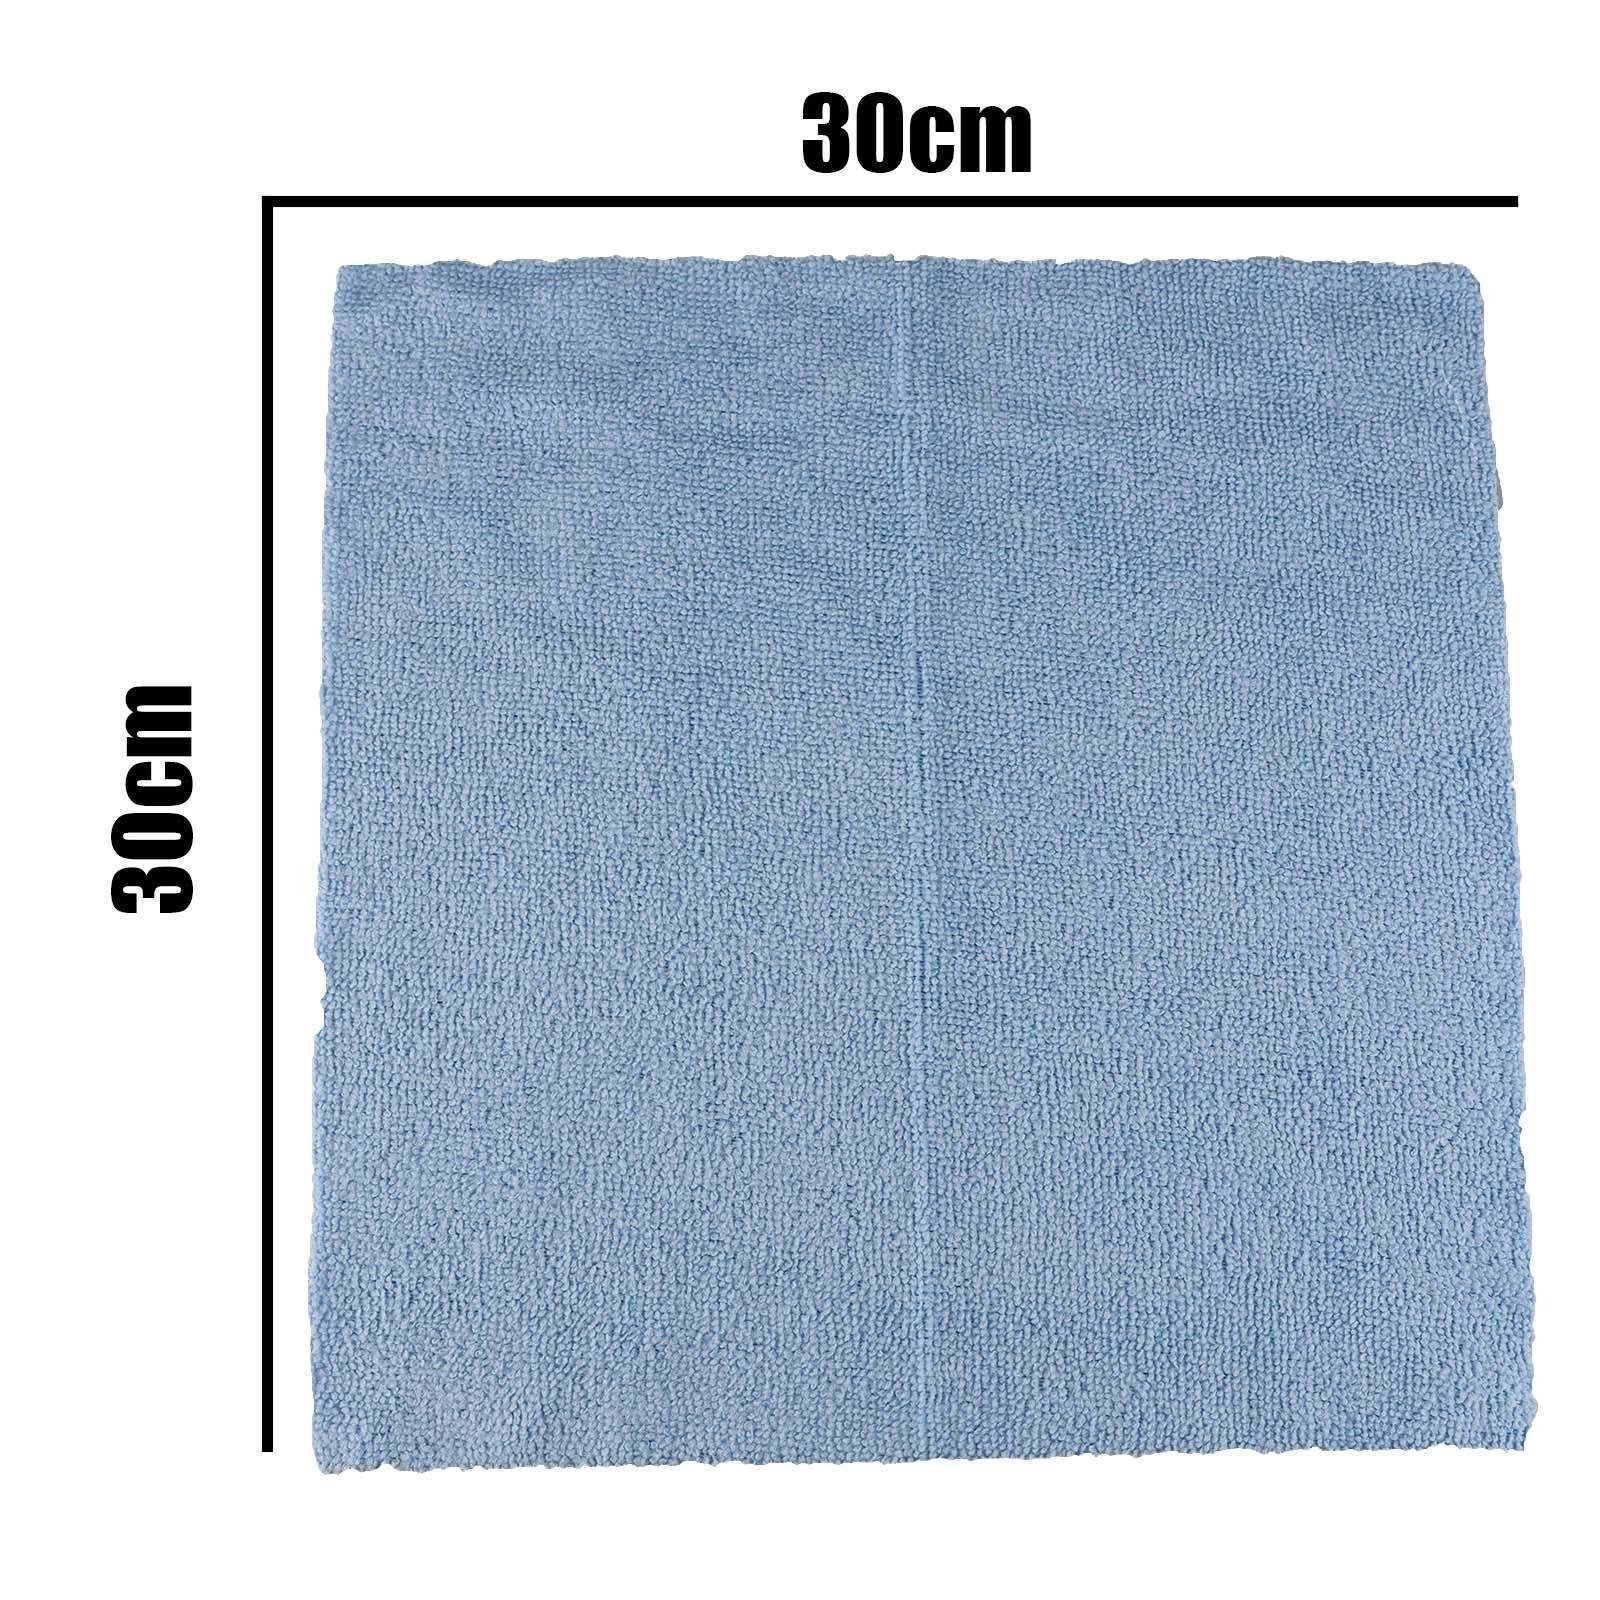 Plentyfy Spültuch Mikrofastertuch Grab & Clean 30 Stk., 30×30 cm, (30 Tücher in Spenderbox), Mikrofasertuch Allzweck – Mikrofasertücher Blau